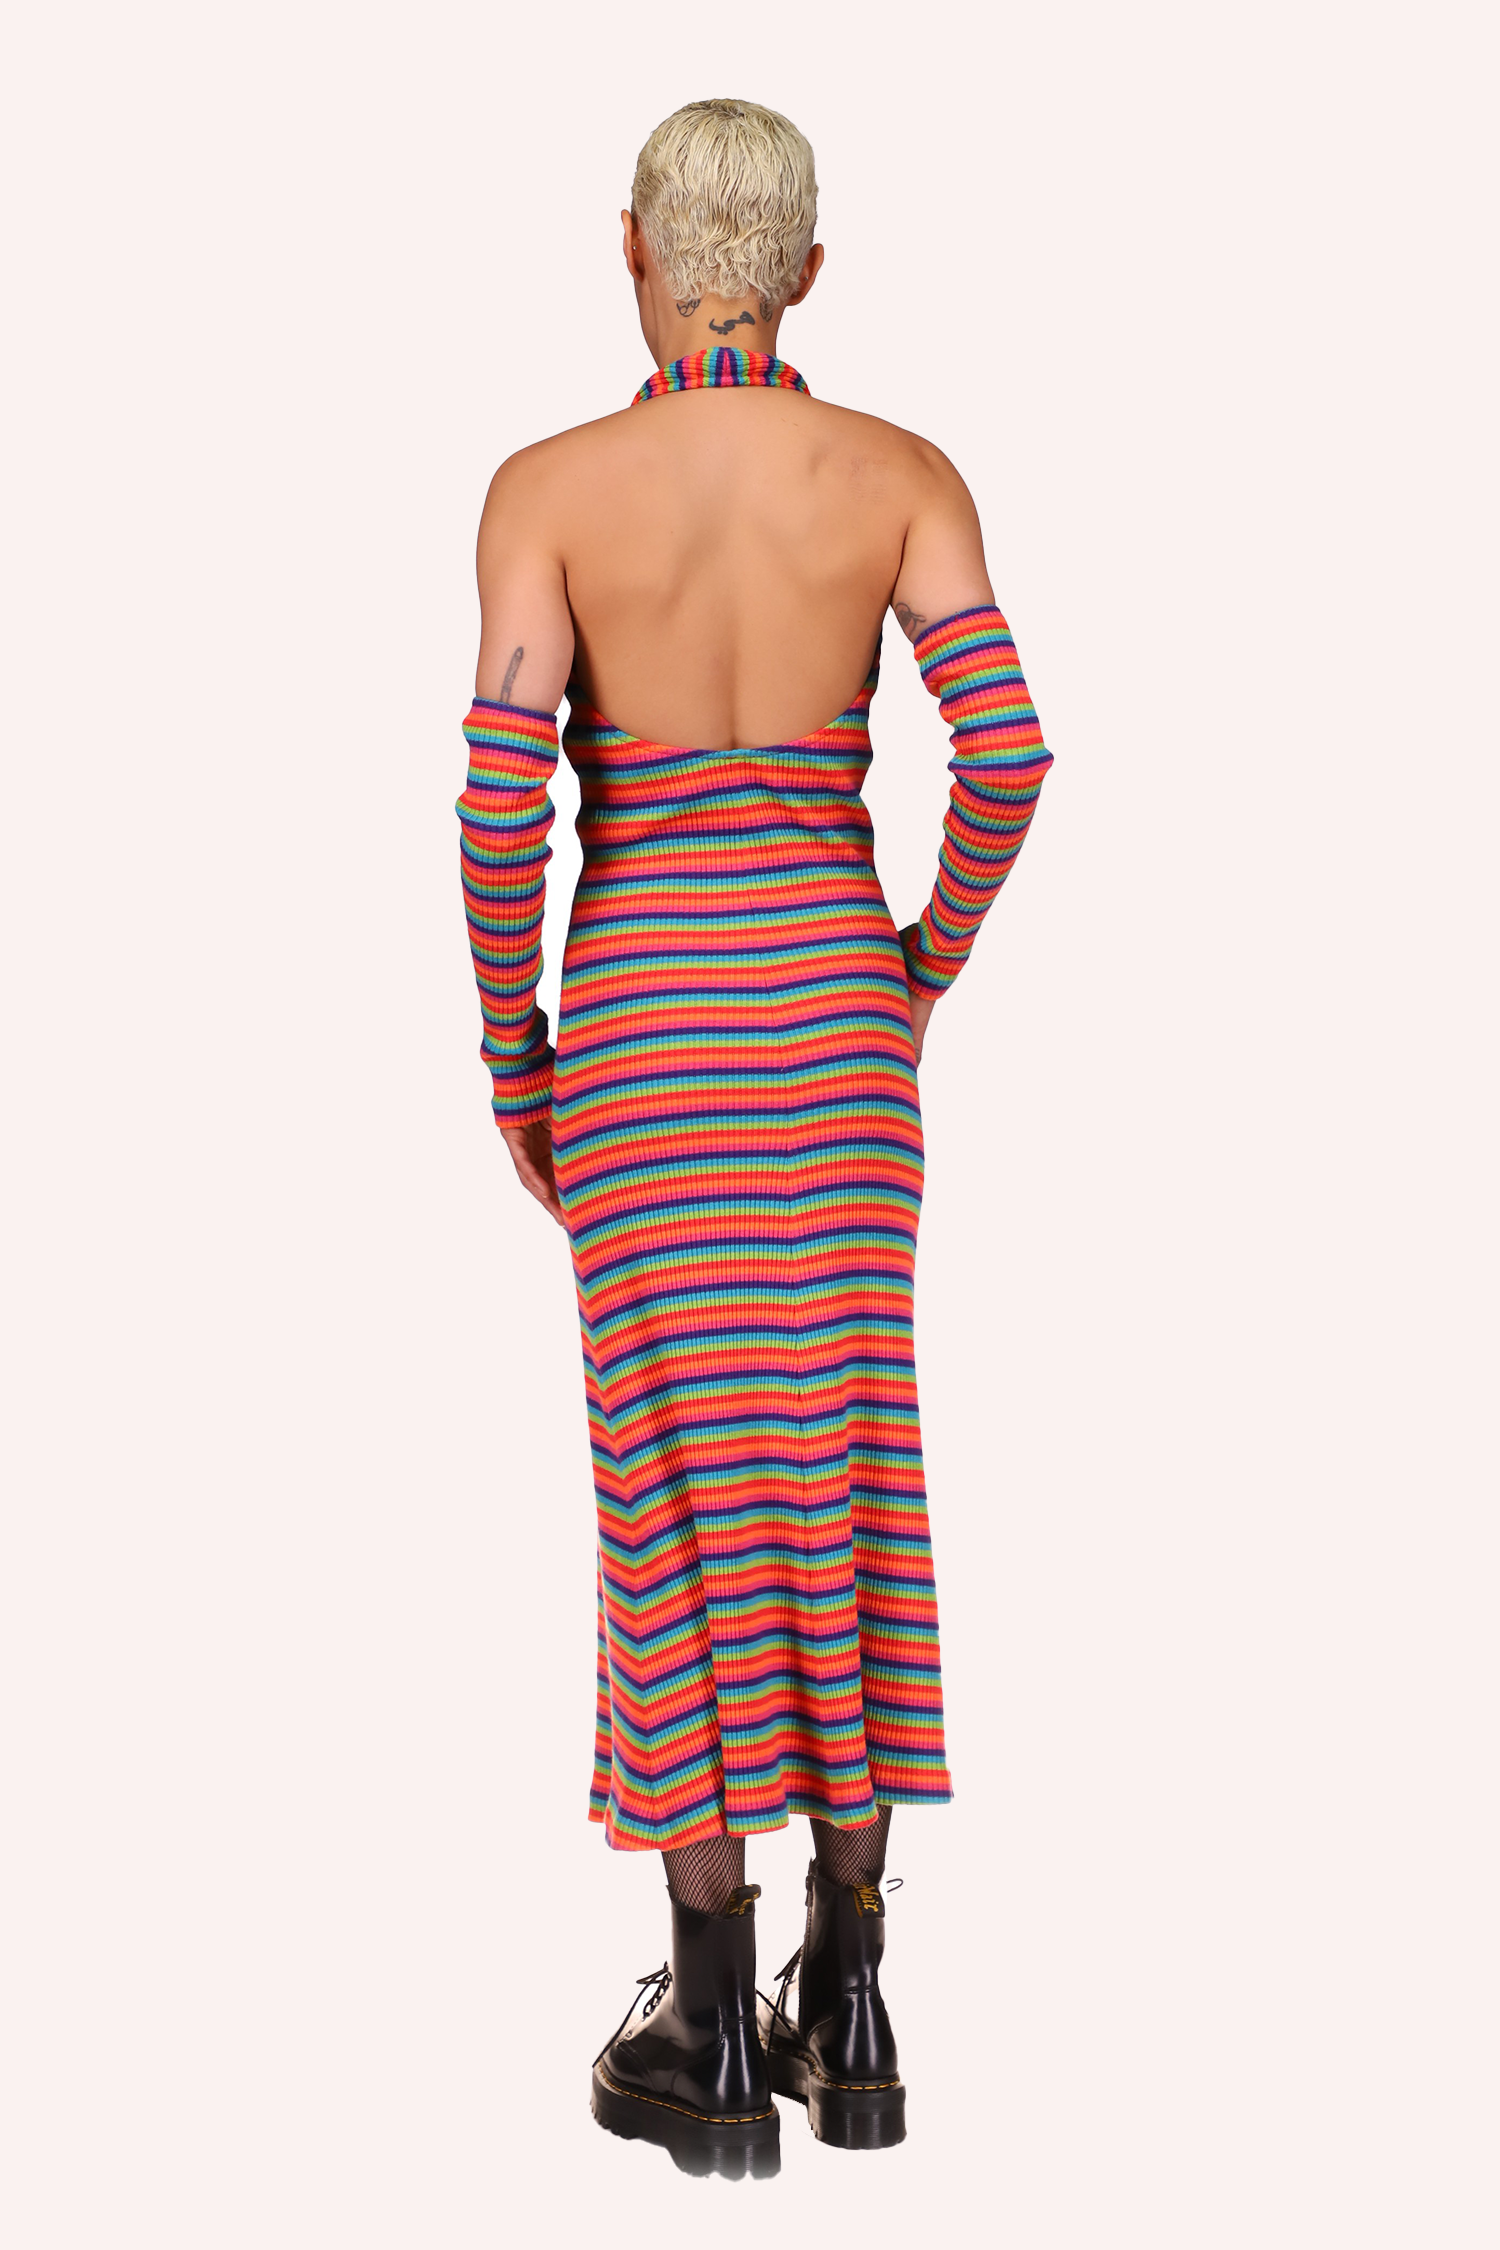 El vestido Rainbow Stripe Halter presenta un corte profundo en la espalda, largo a media pantorrilla y sin mangas